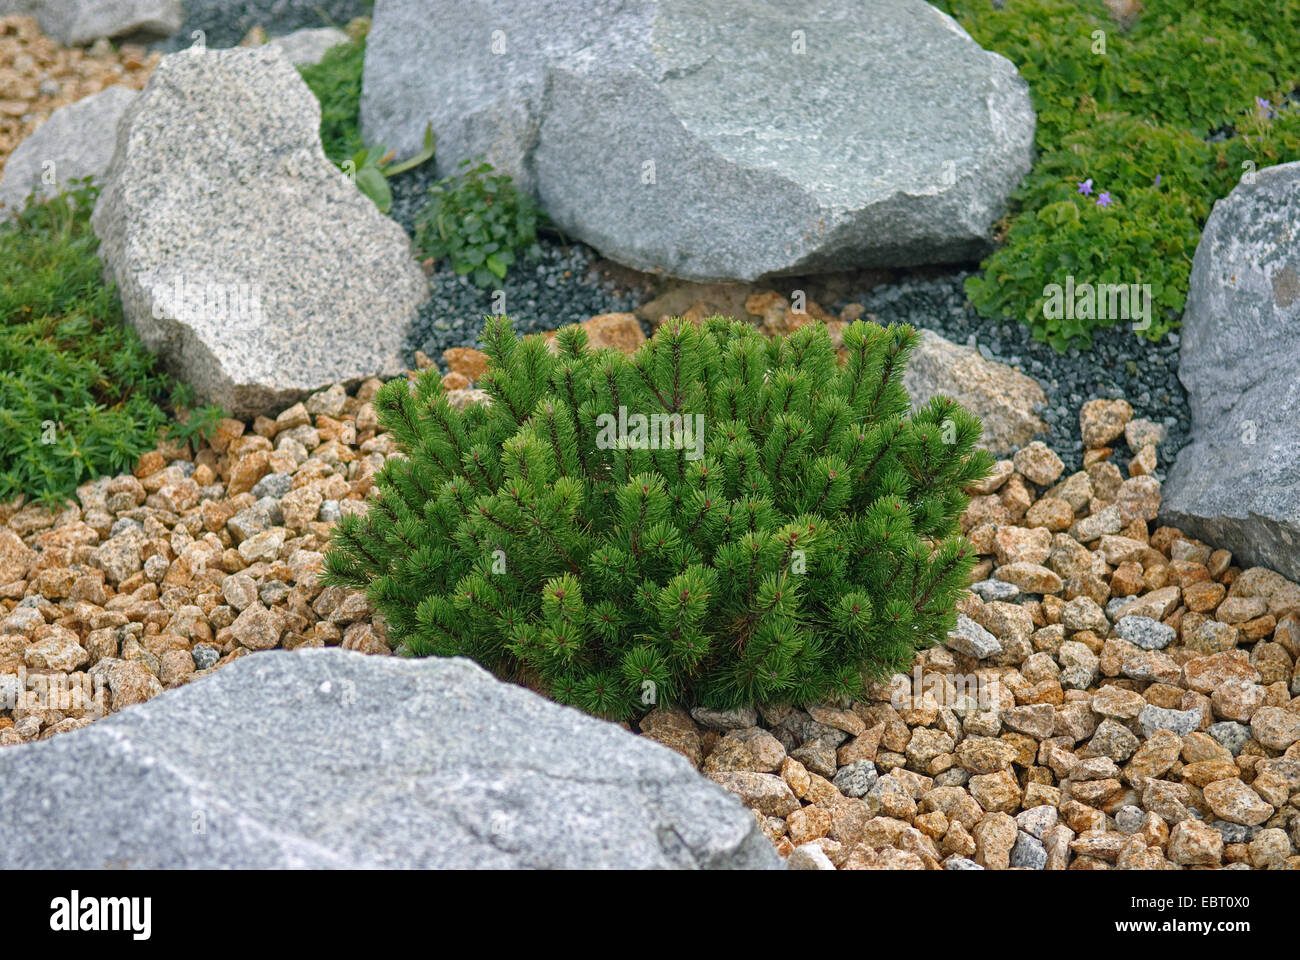 mountain pine, mugo pine (Pinus mugo pumilio), in a rock garden Stock Photo